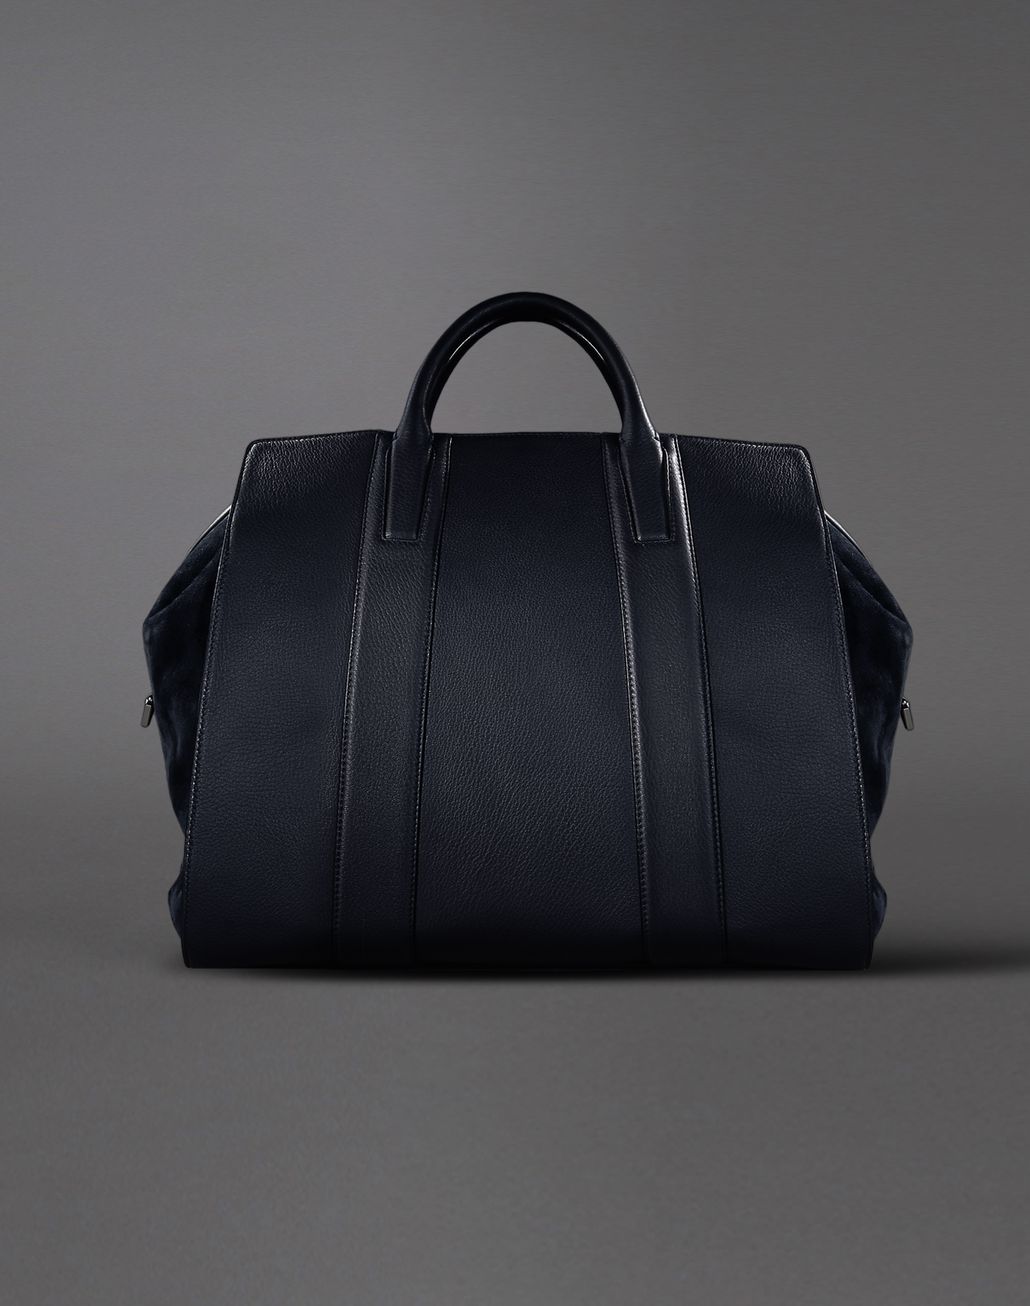 Brioni Men's Bag | Brioni Official Online Store